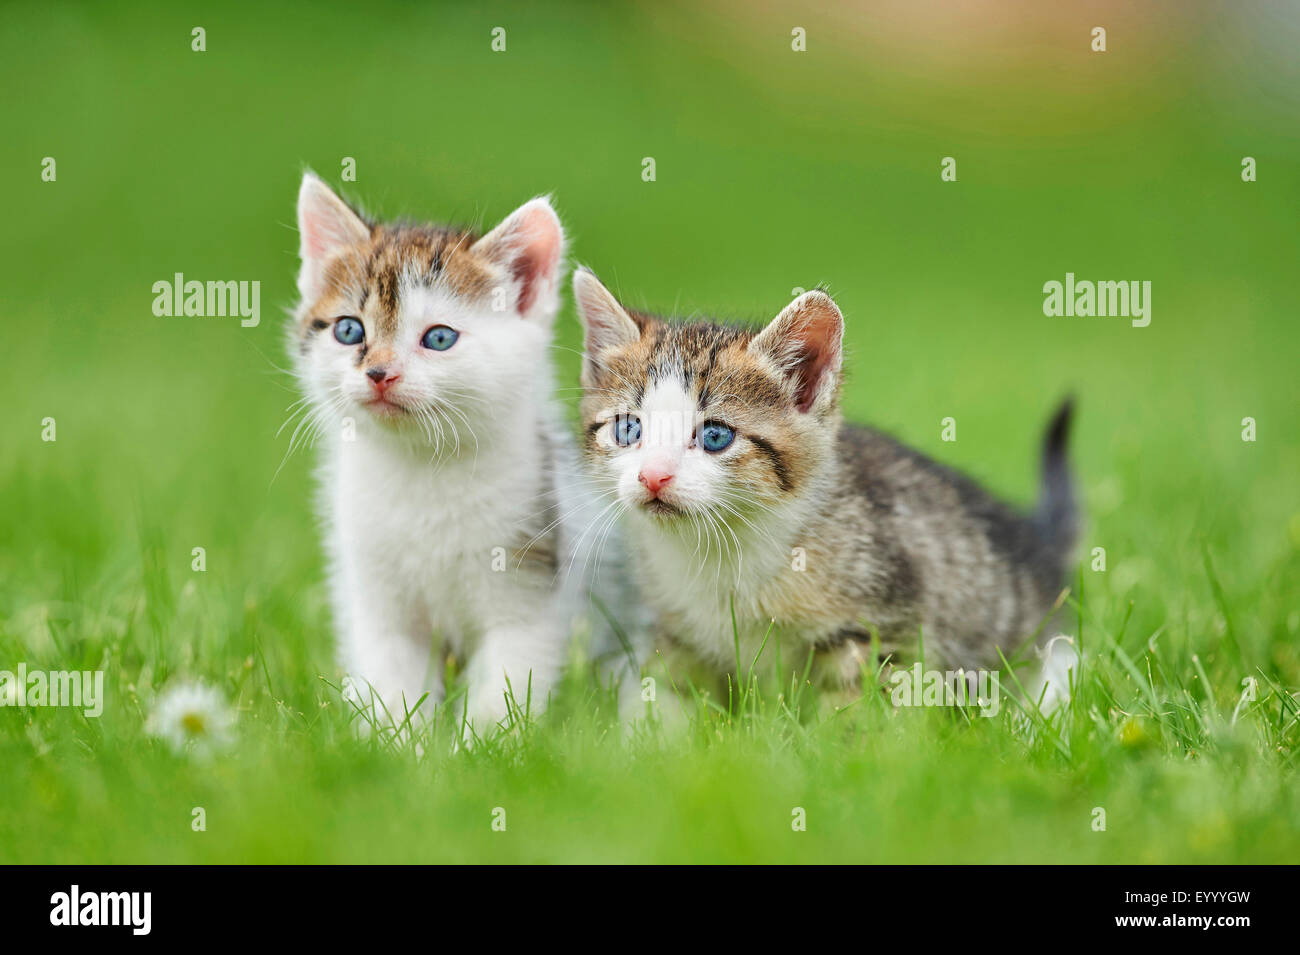 Chat domestique, le chat domestique (Felis silvestris catus), f. deux chatons de six semaines dans un pré, Allemagne Banque D'Images